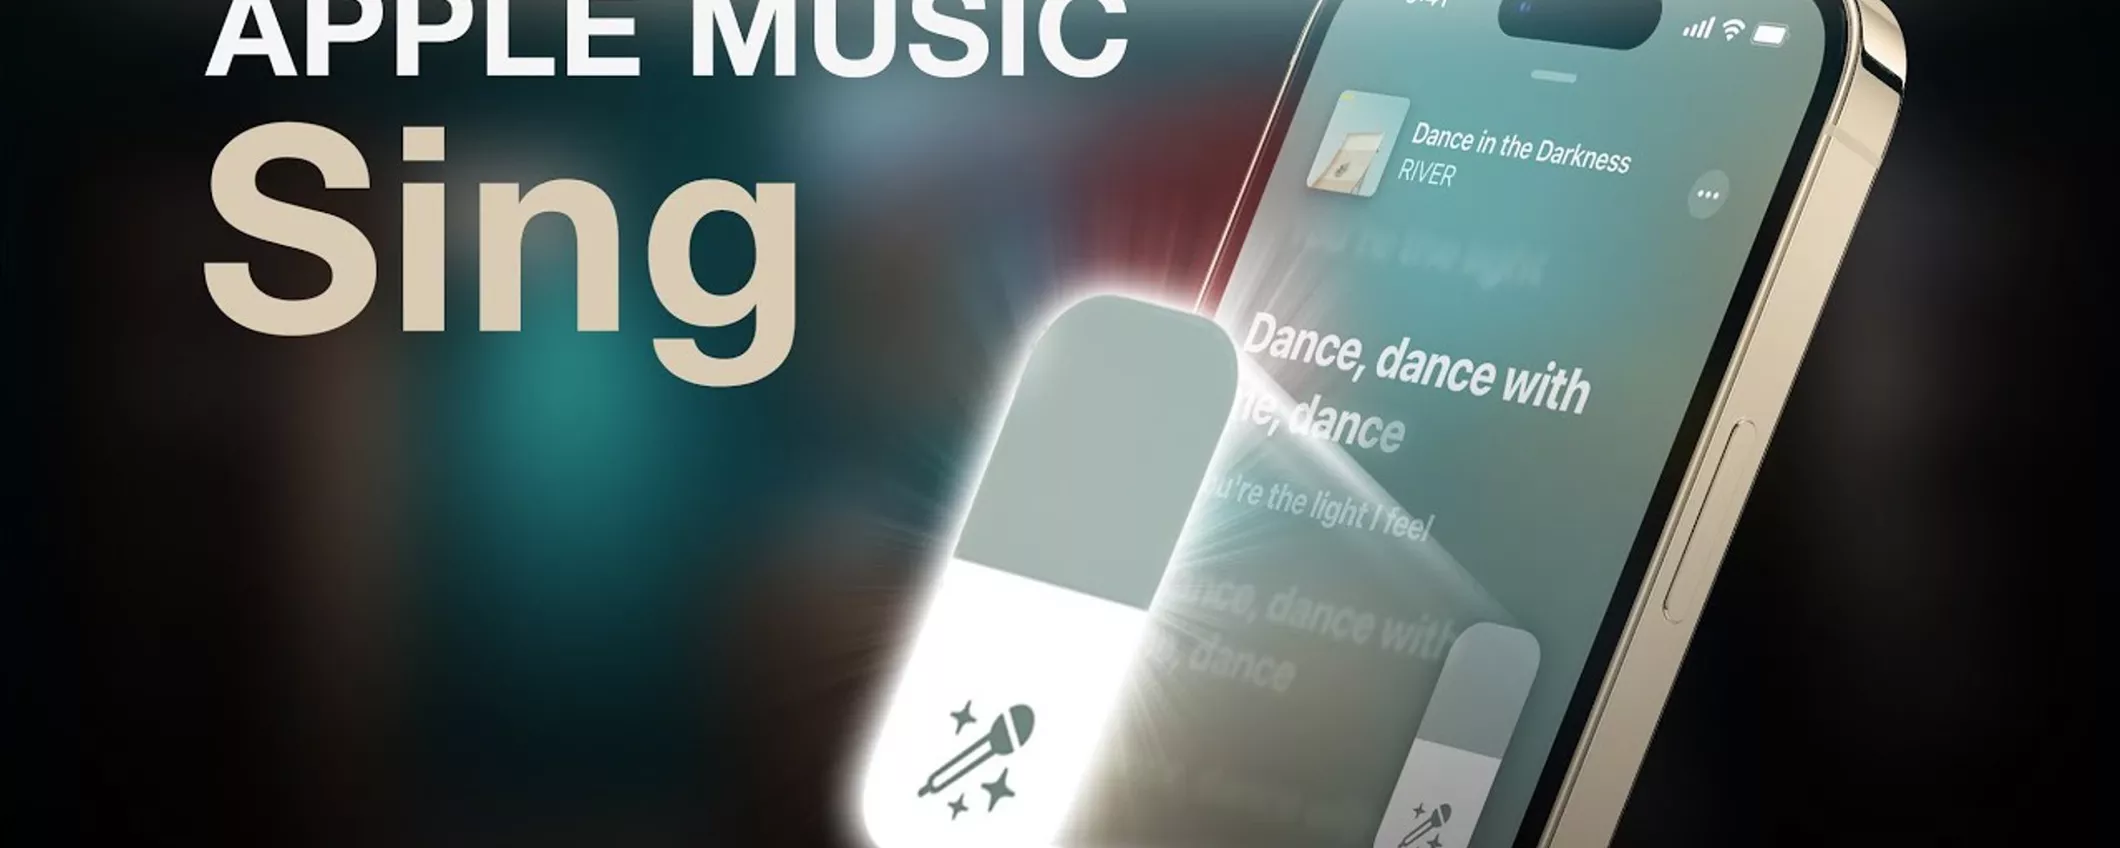 Apple Music Sing: come funziona il Karaoke di Apple e dispositivi compatibili